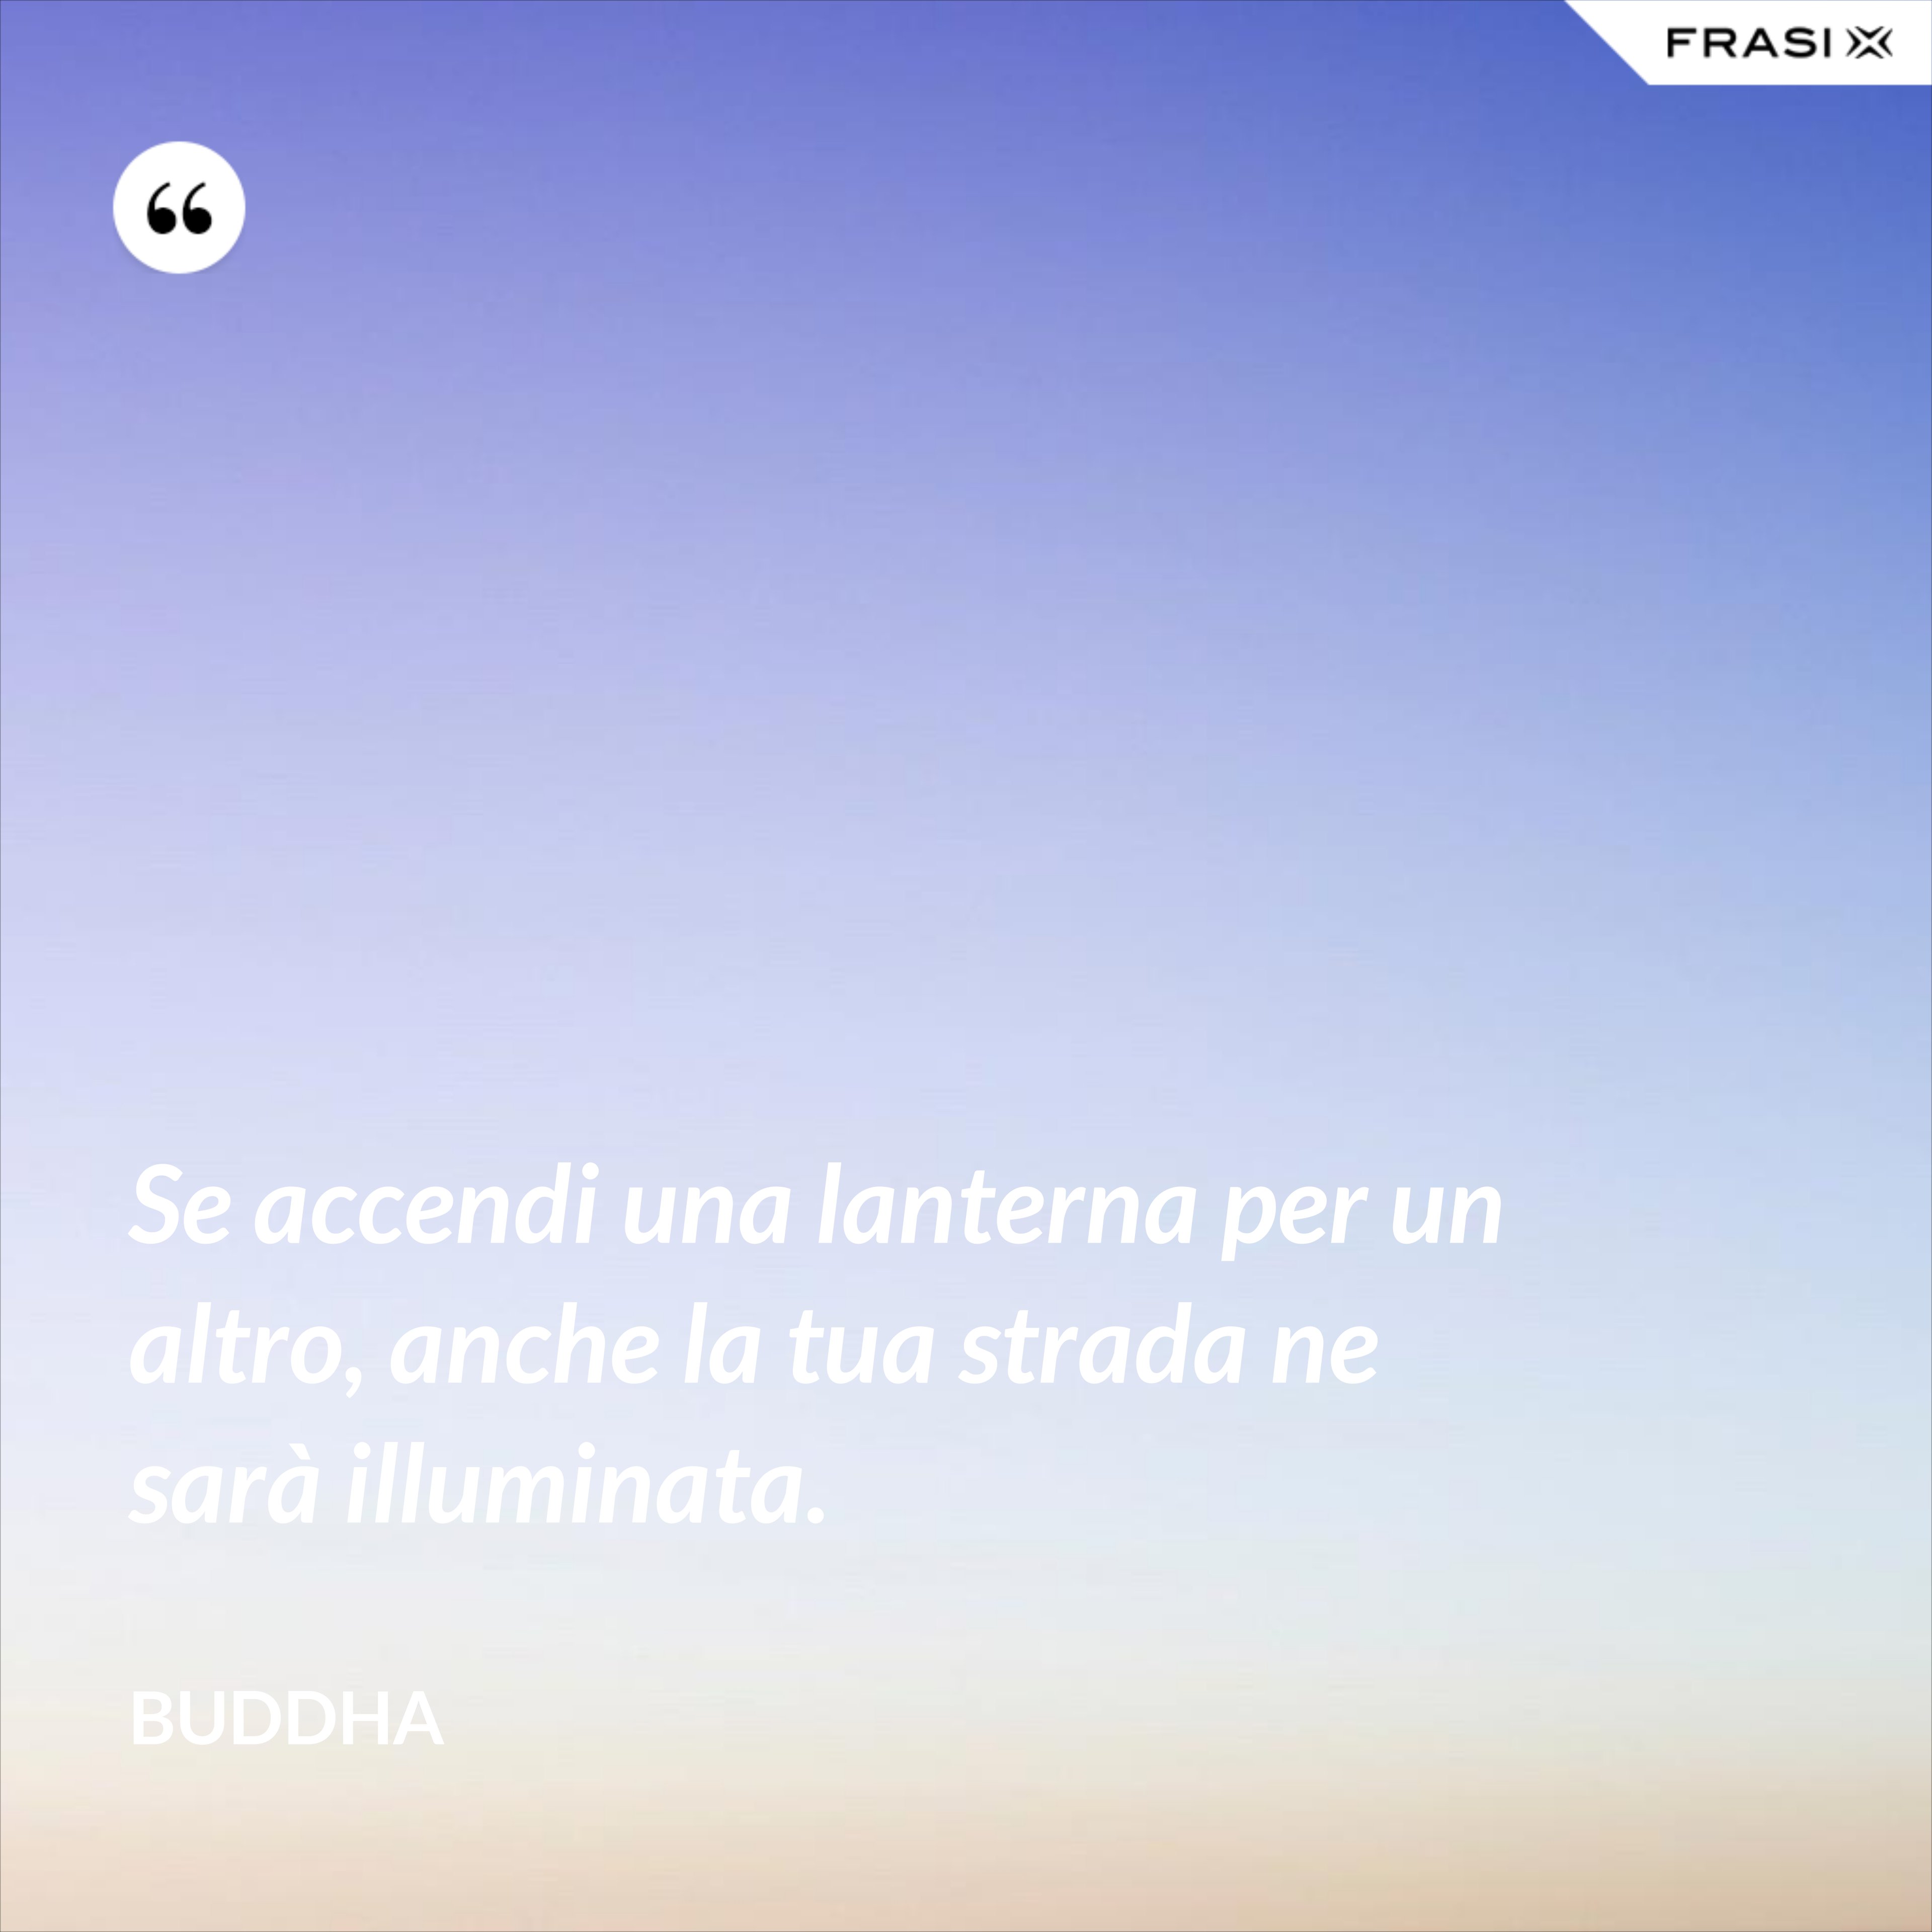 Se accendi una lanterna per un altro, anche la tua strada ne sarà illuminata. - Buddha